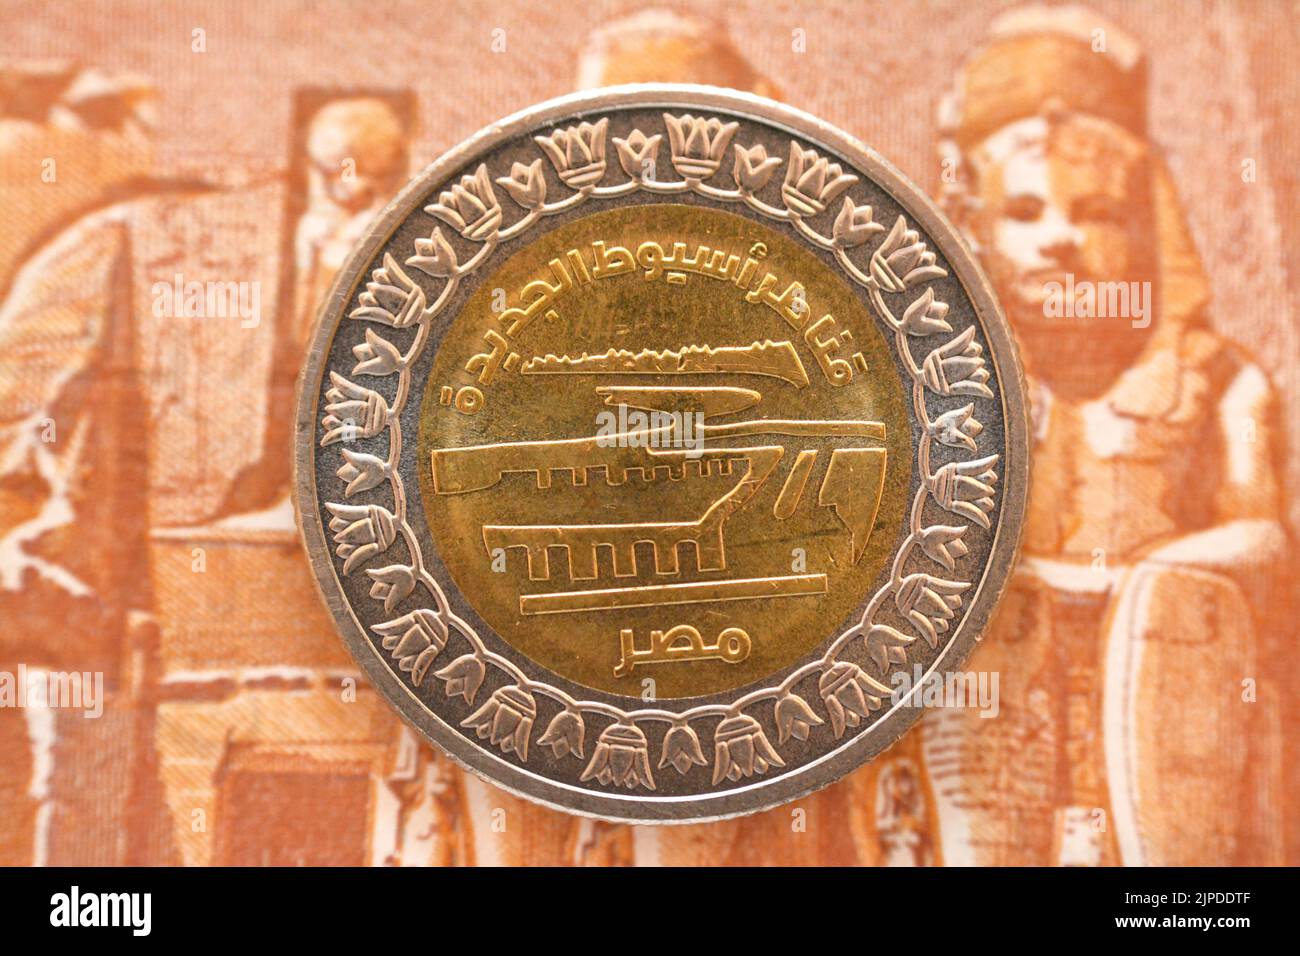 Neuer Slogan des Asyut-Stadtsperrprojekts von der Vorderseite der 1 LE EGP-Münze ein ägyptisches Pfund Geld auf einem verschwommenen Hintergrund der Rückseite eines p Stockfoto